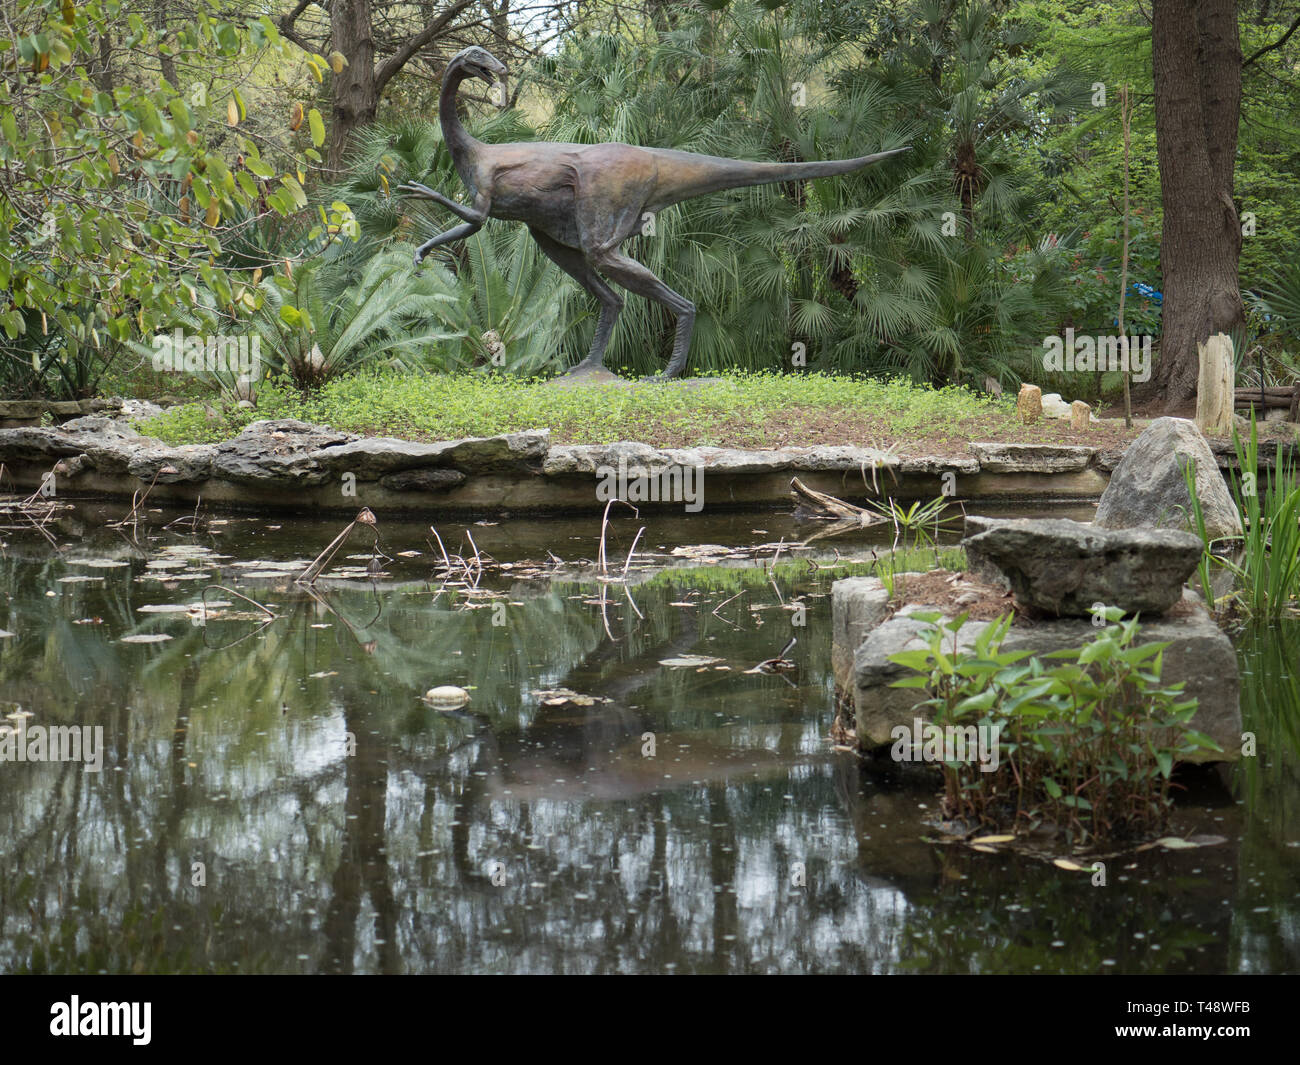 Ornithomimid dinosaur sculpture in the Hartman Prehistoric Garden in Austin, Texas Stock Photo